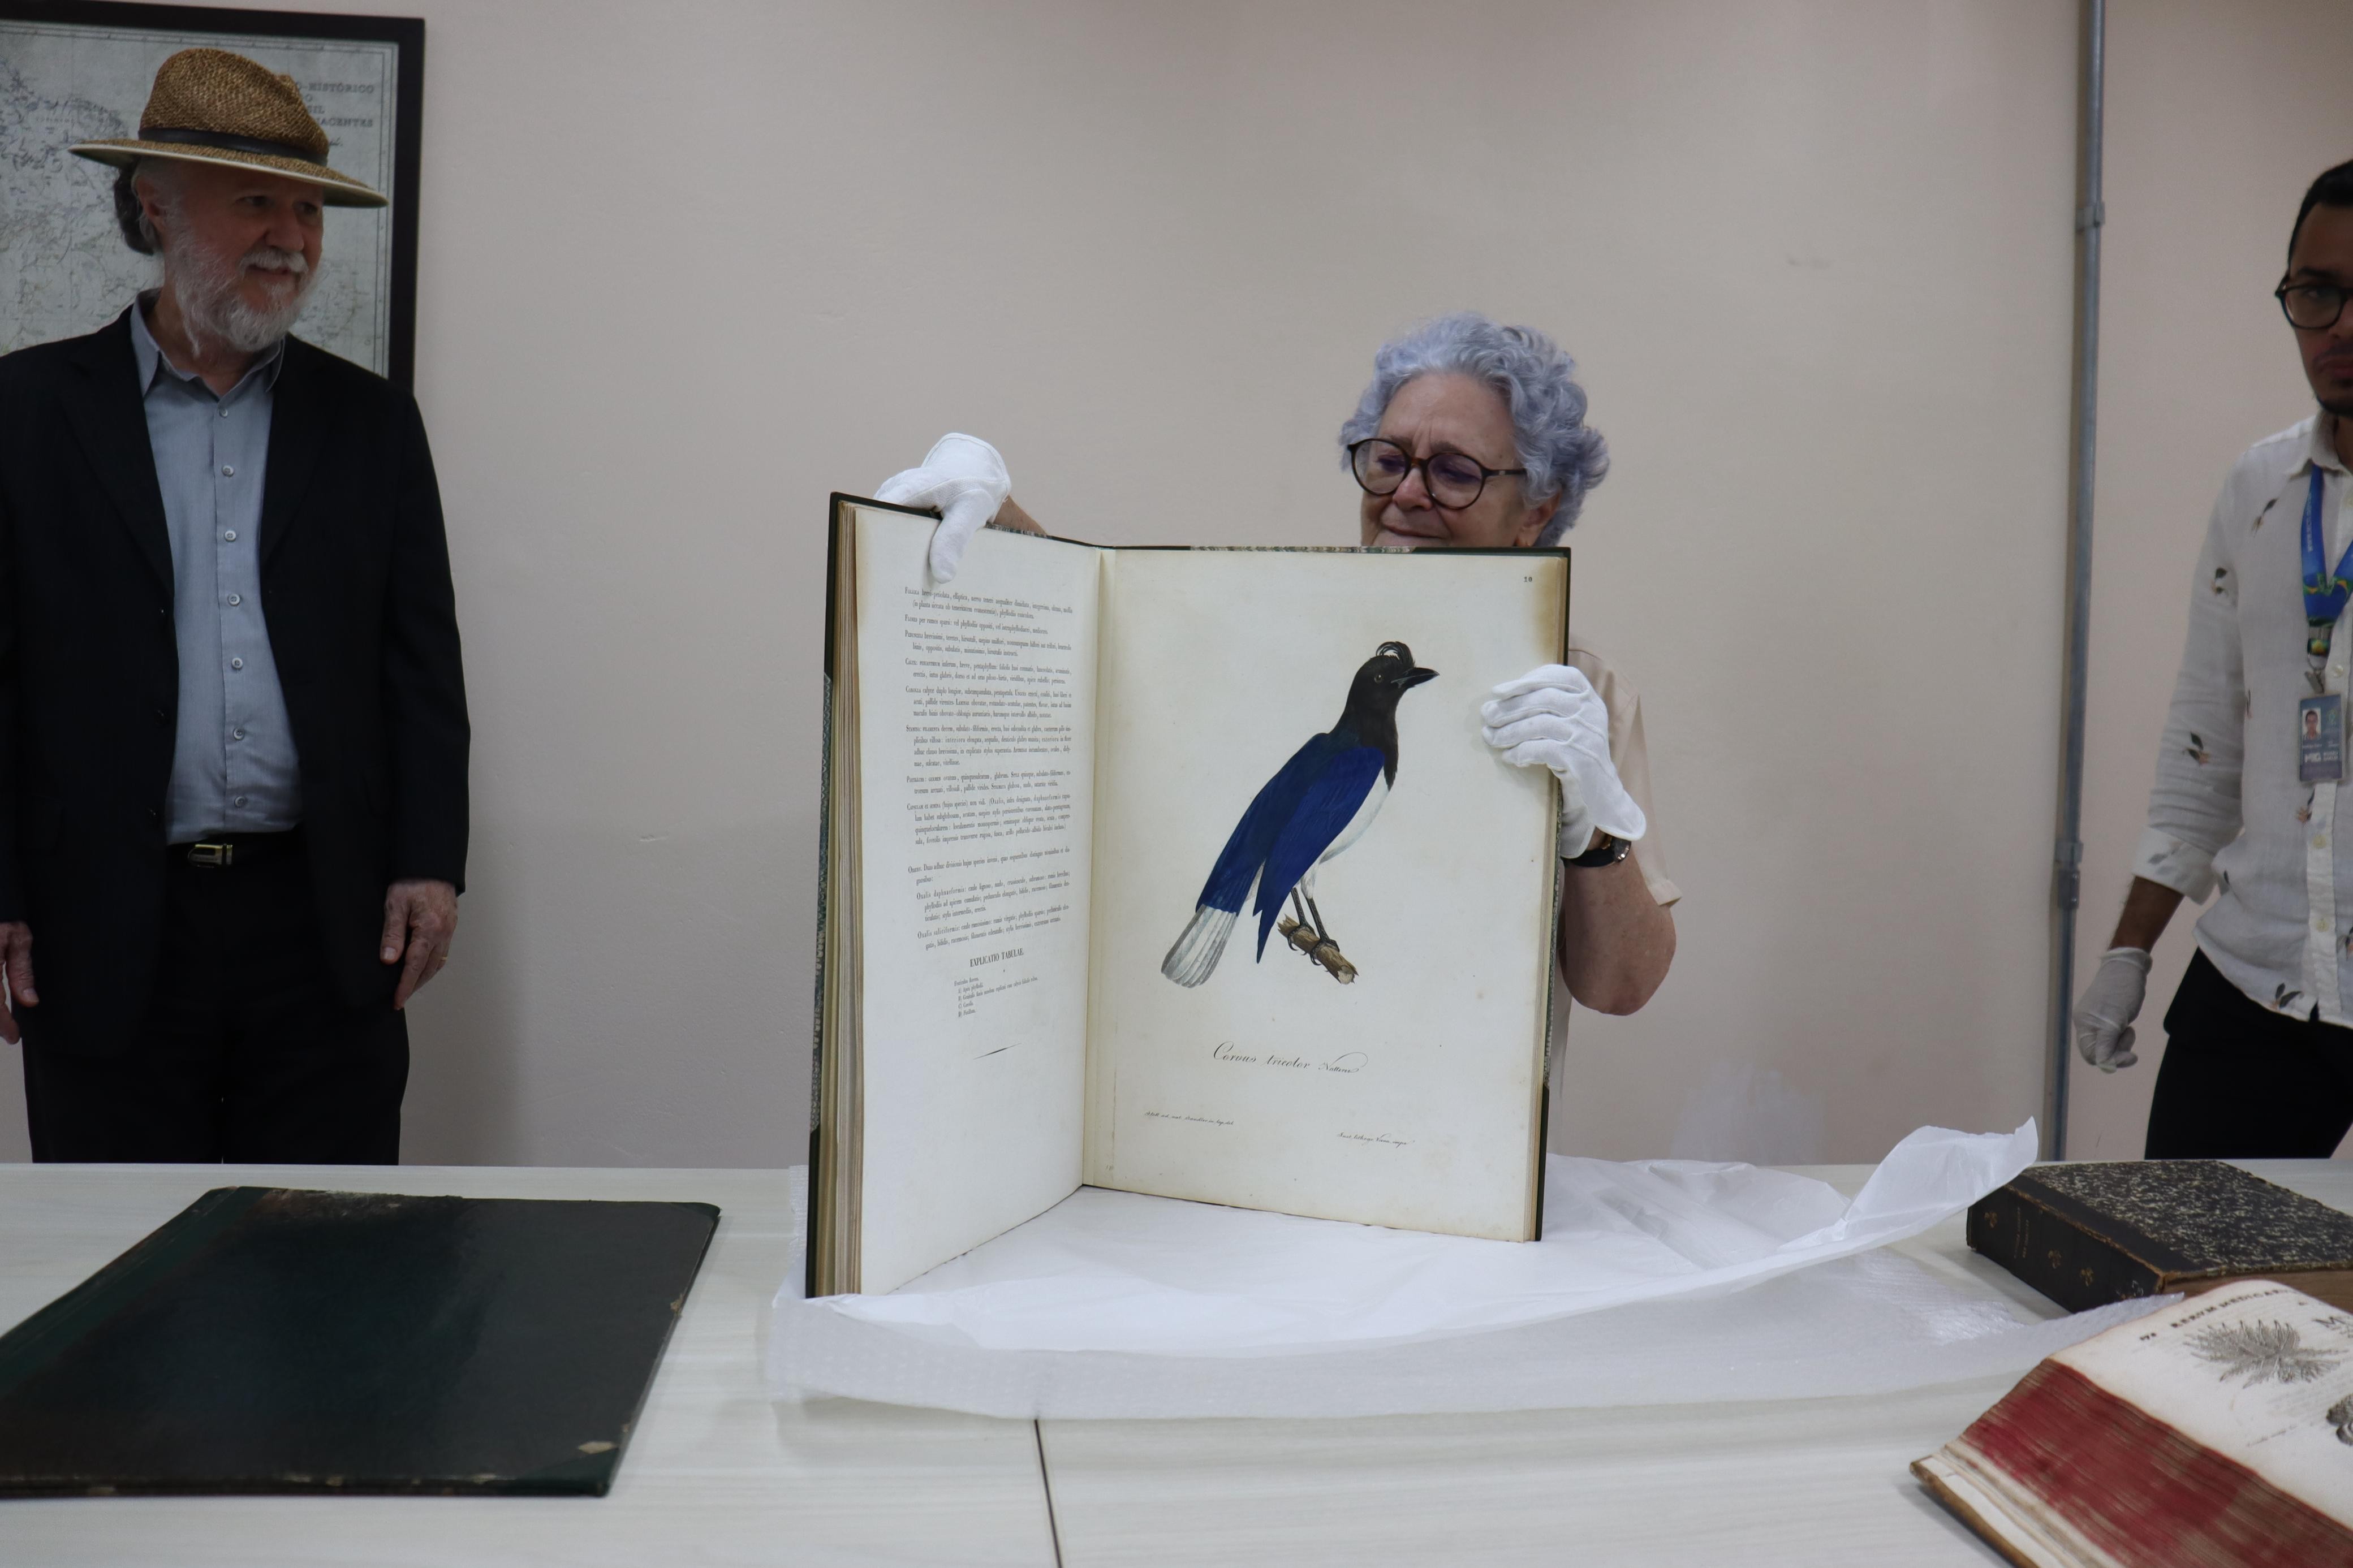 Dia do Livro: obra rara avaliada em R$120 mil é recuperada após ser furtada do Museu Emílio Goeldi, no PA